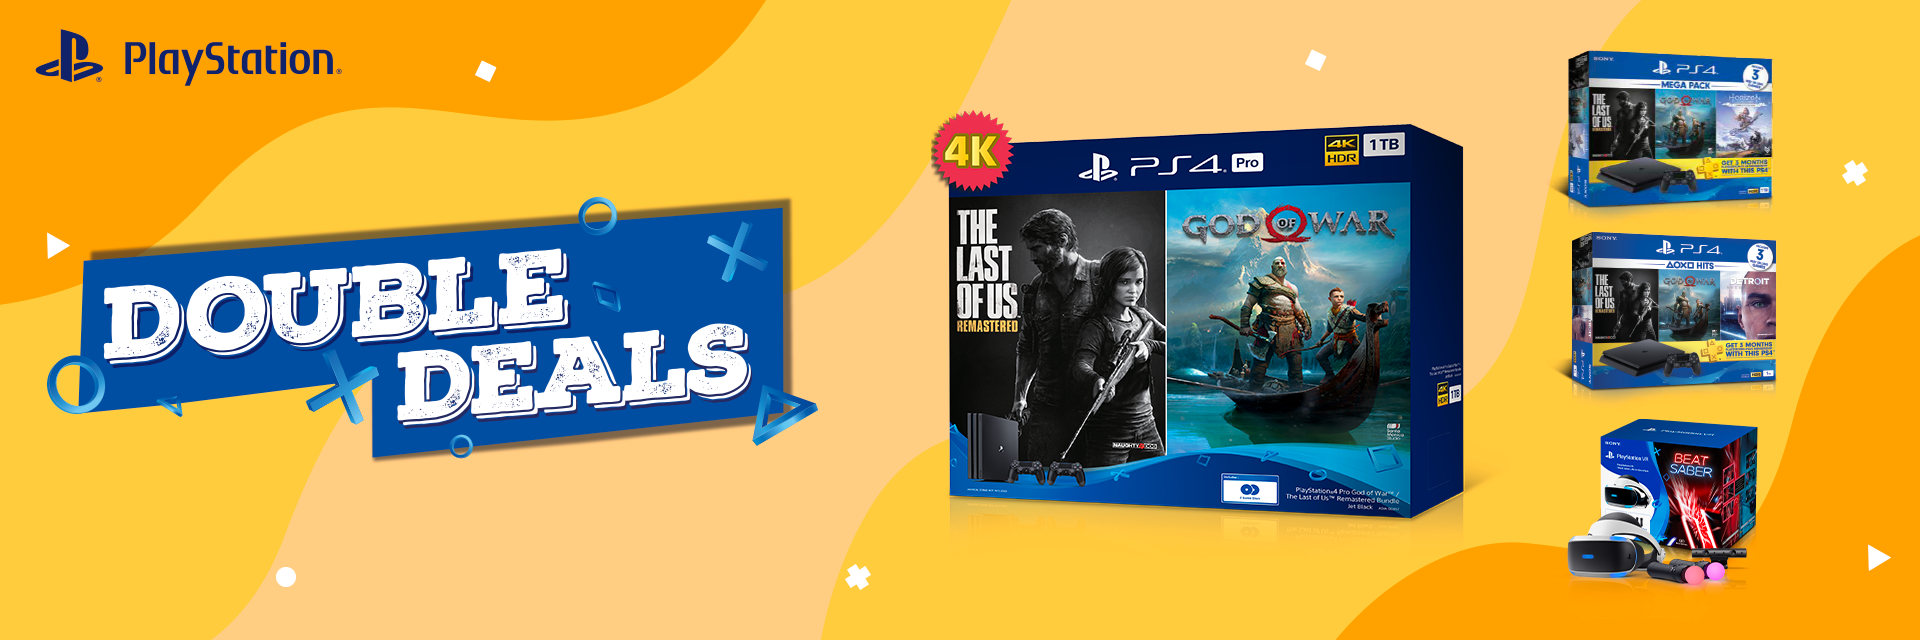 Sony เปิดขายเซ็ต PlayStation 4 Pro ชุด Double Deals รวมเกมดัง The Last of Us และ God of War ในราคา 14,990 บาท